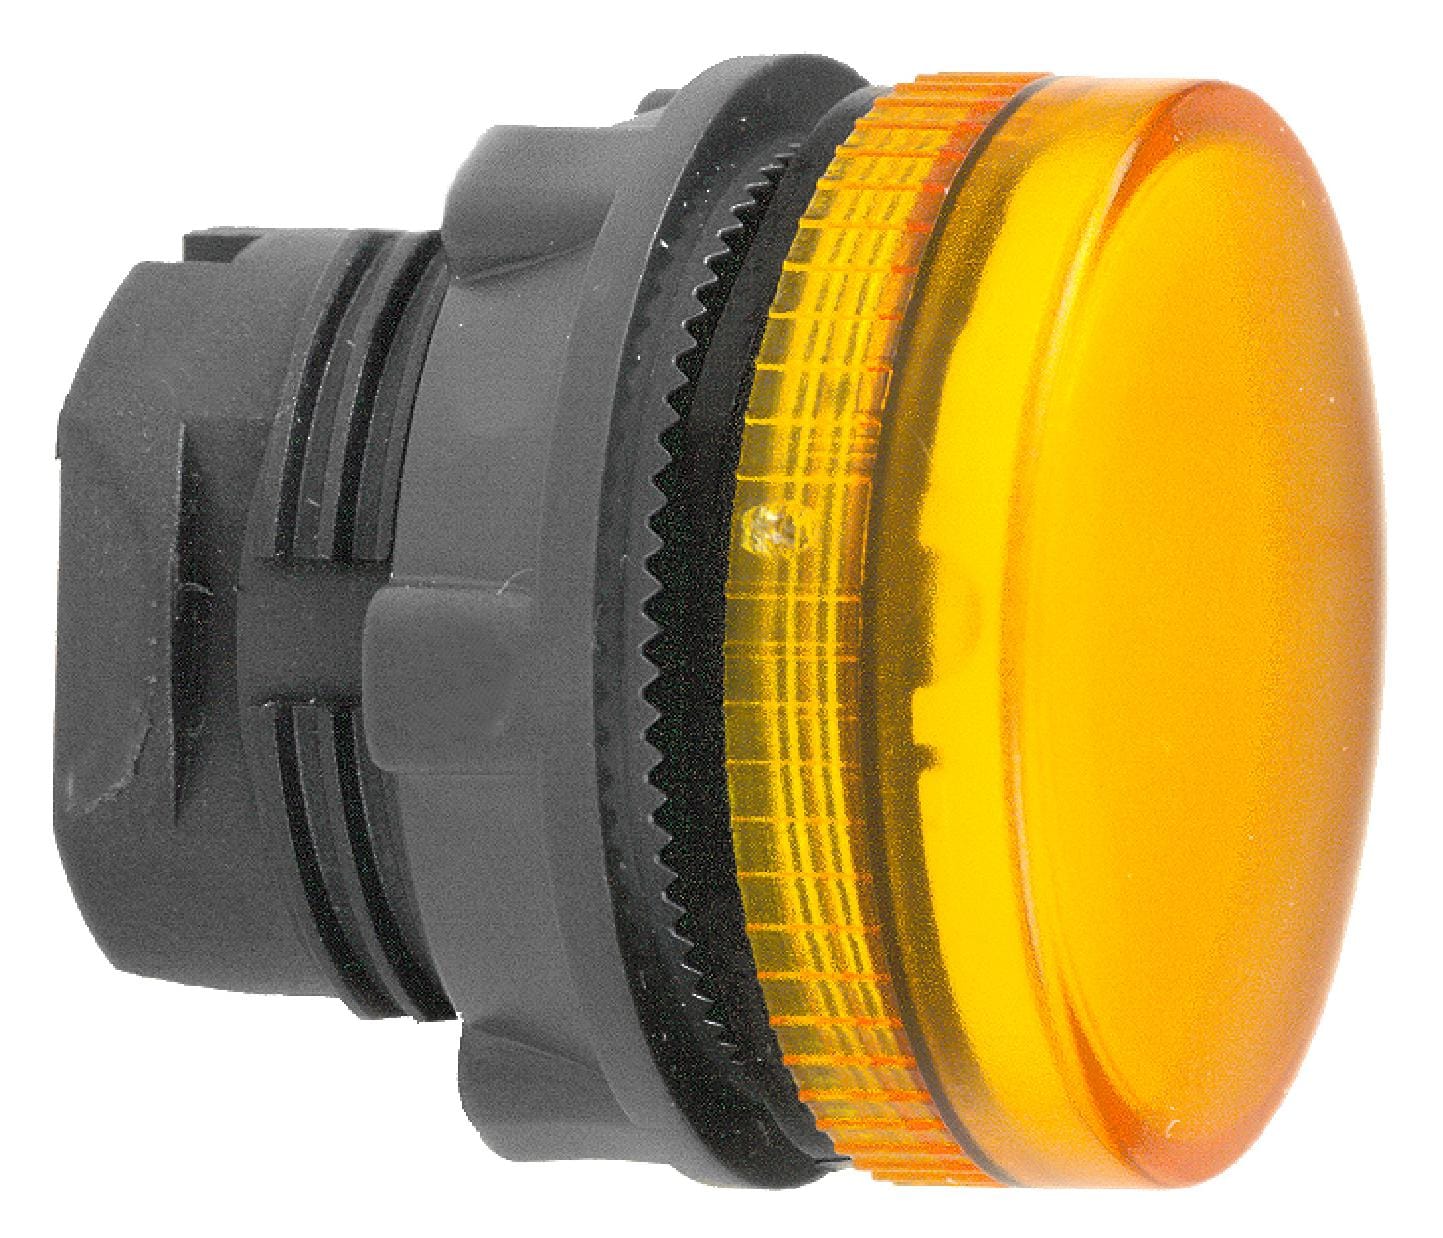 SCHNEIDER ELECTRIC Indicator Lenses ZB5AV053S PILOT LIGHT HEAD, YELLOW, ROUND, 22MM SCHNEIDER ELECTRIC 3115344 ZB5AV053S